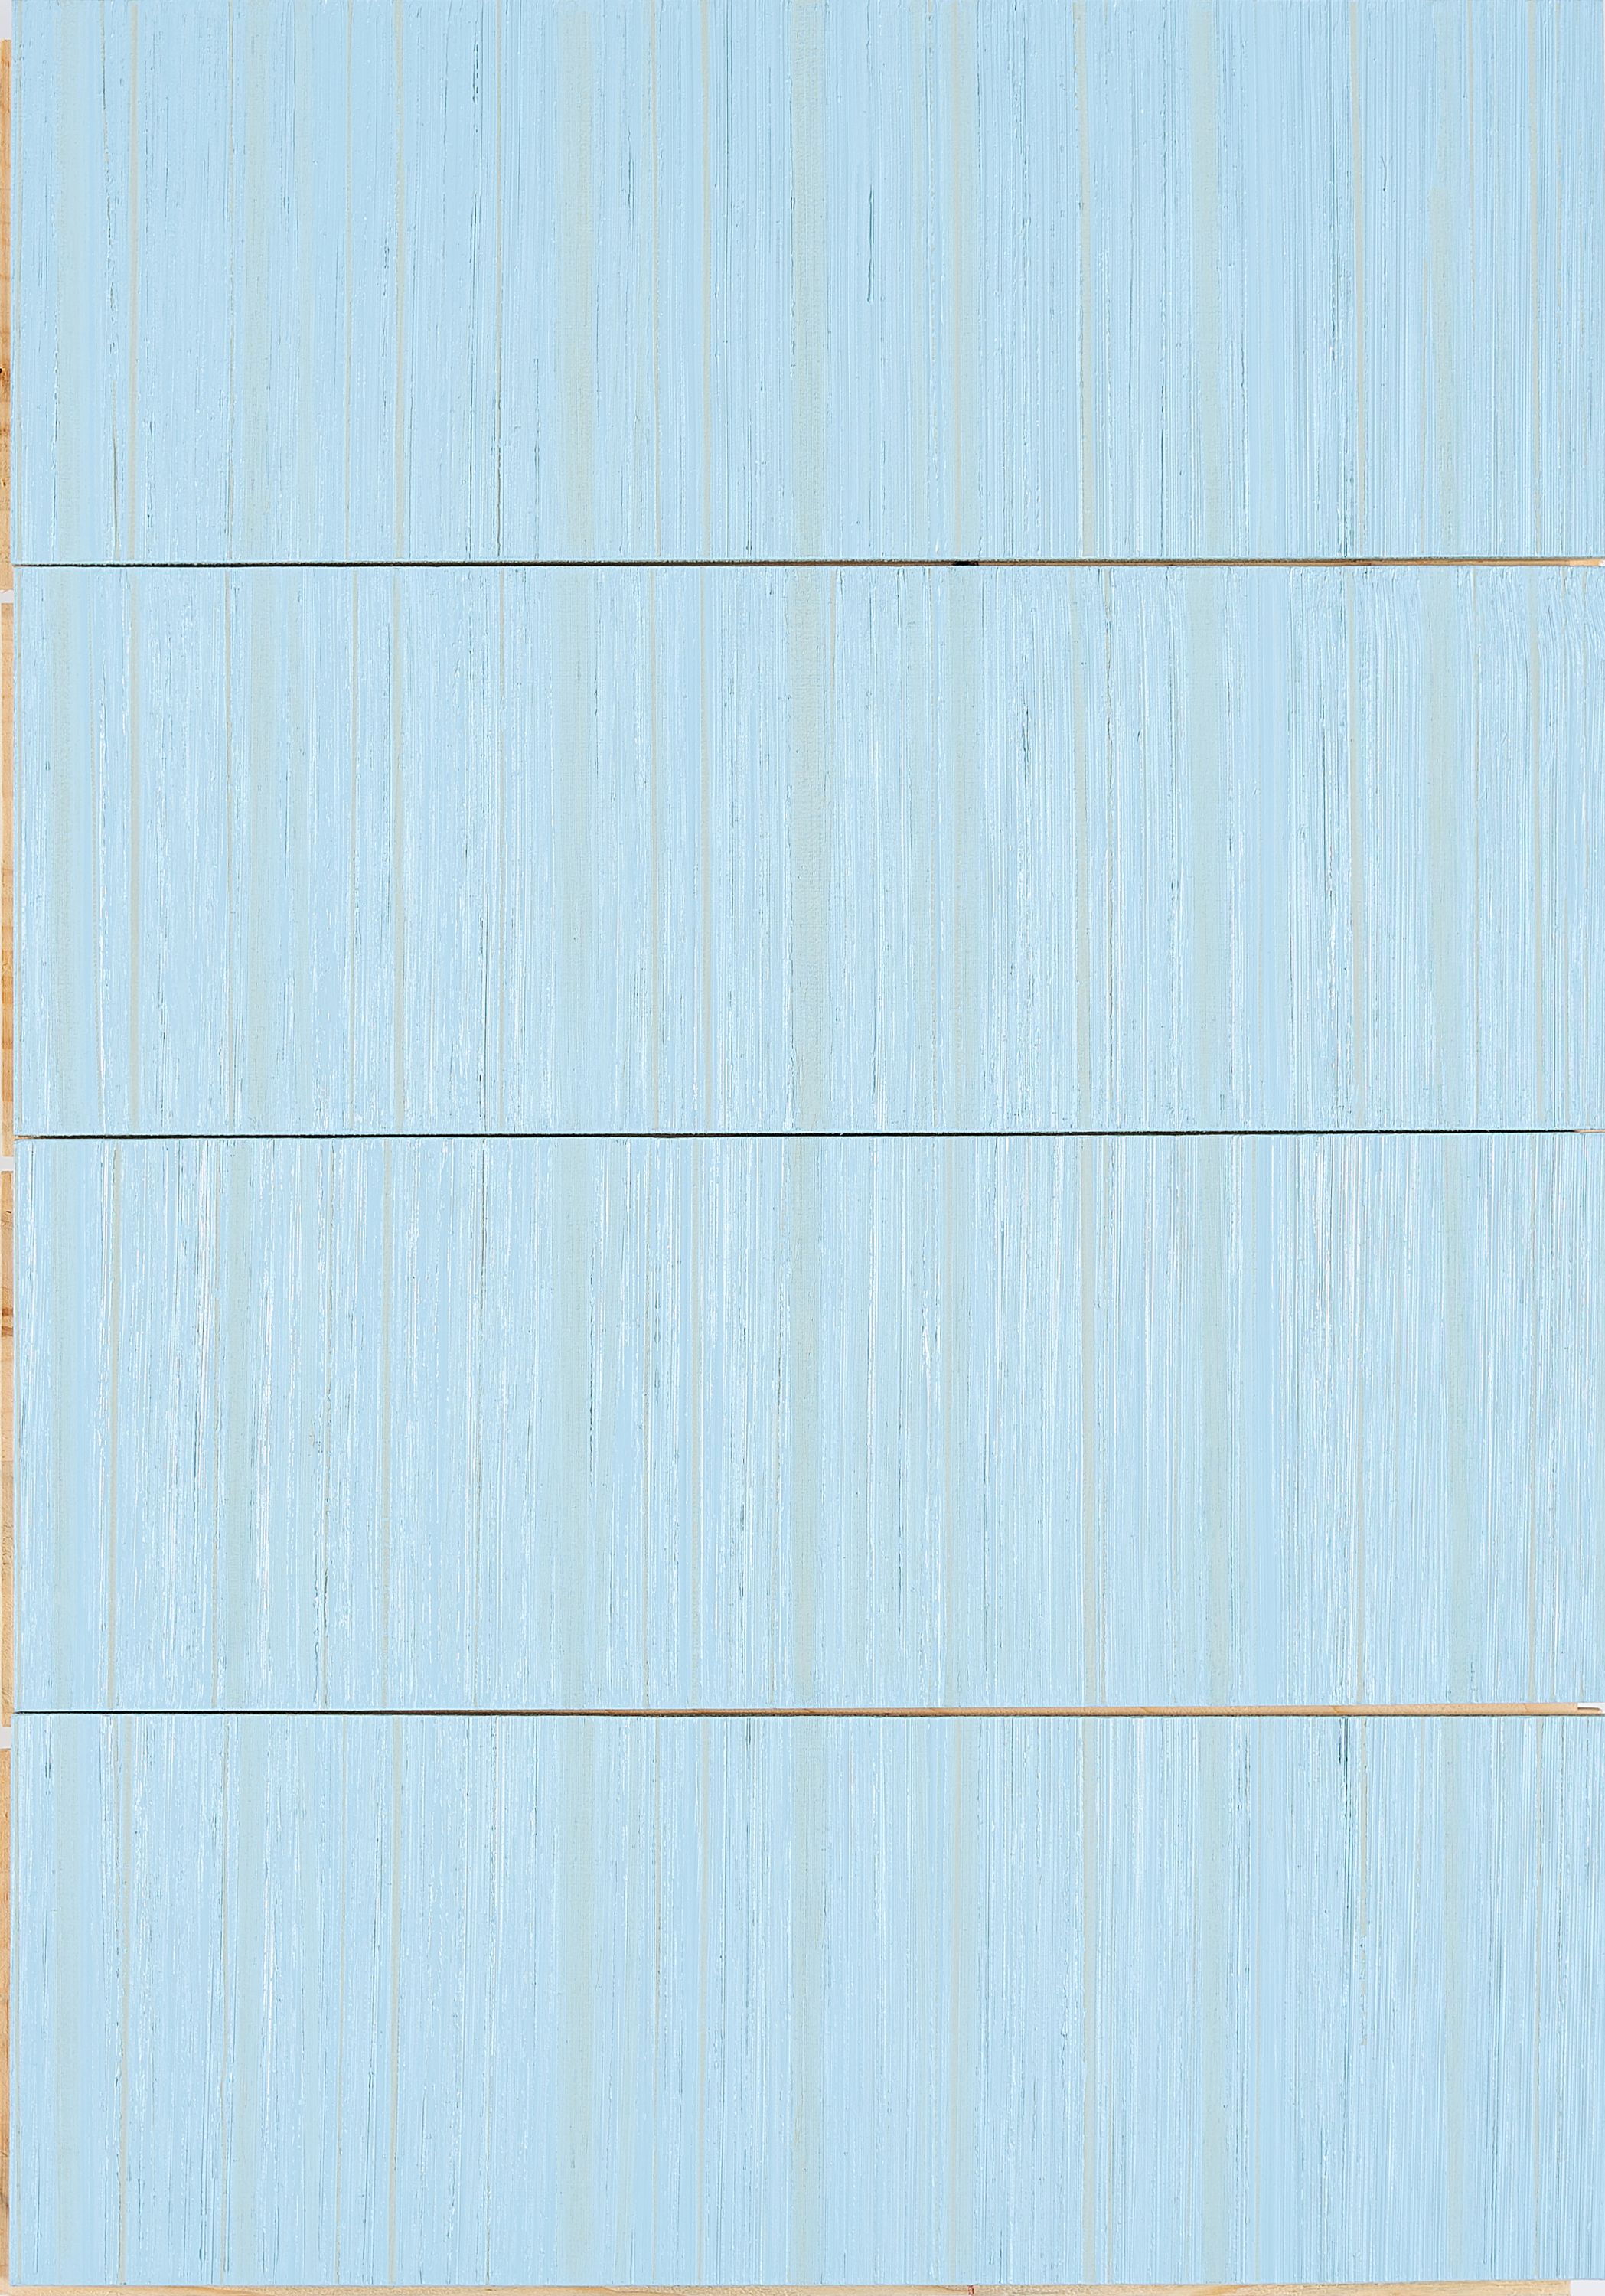 Arne Schreiber - Studie zu 41 hellblau, 300001-4193, Van Ham Kunstauktionen